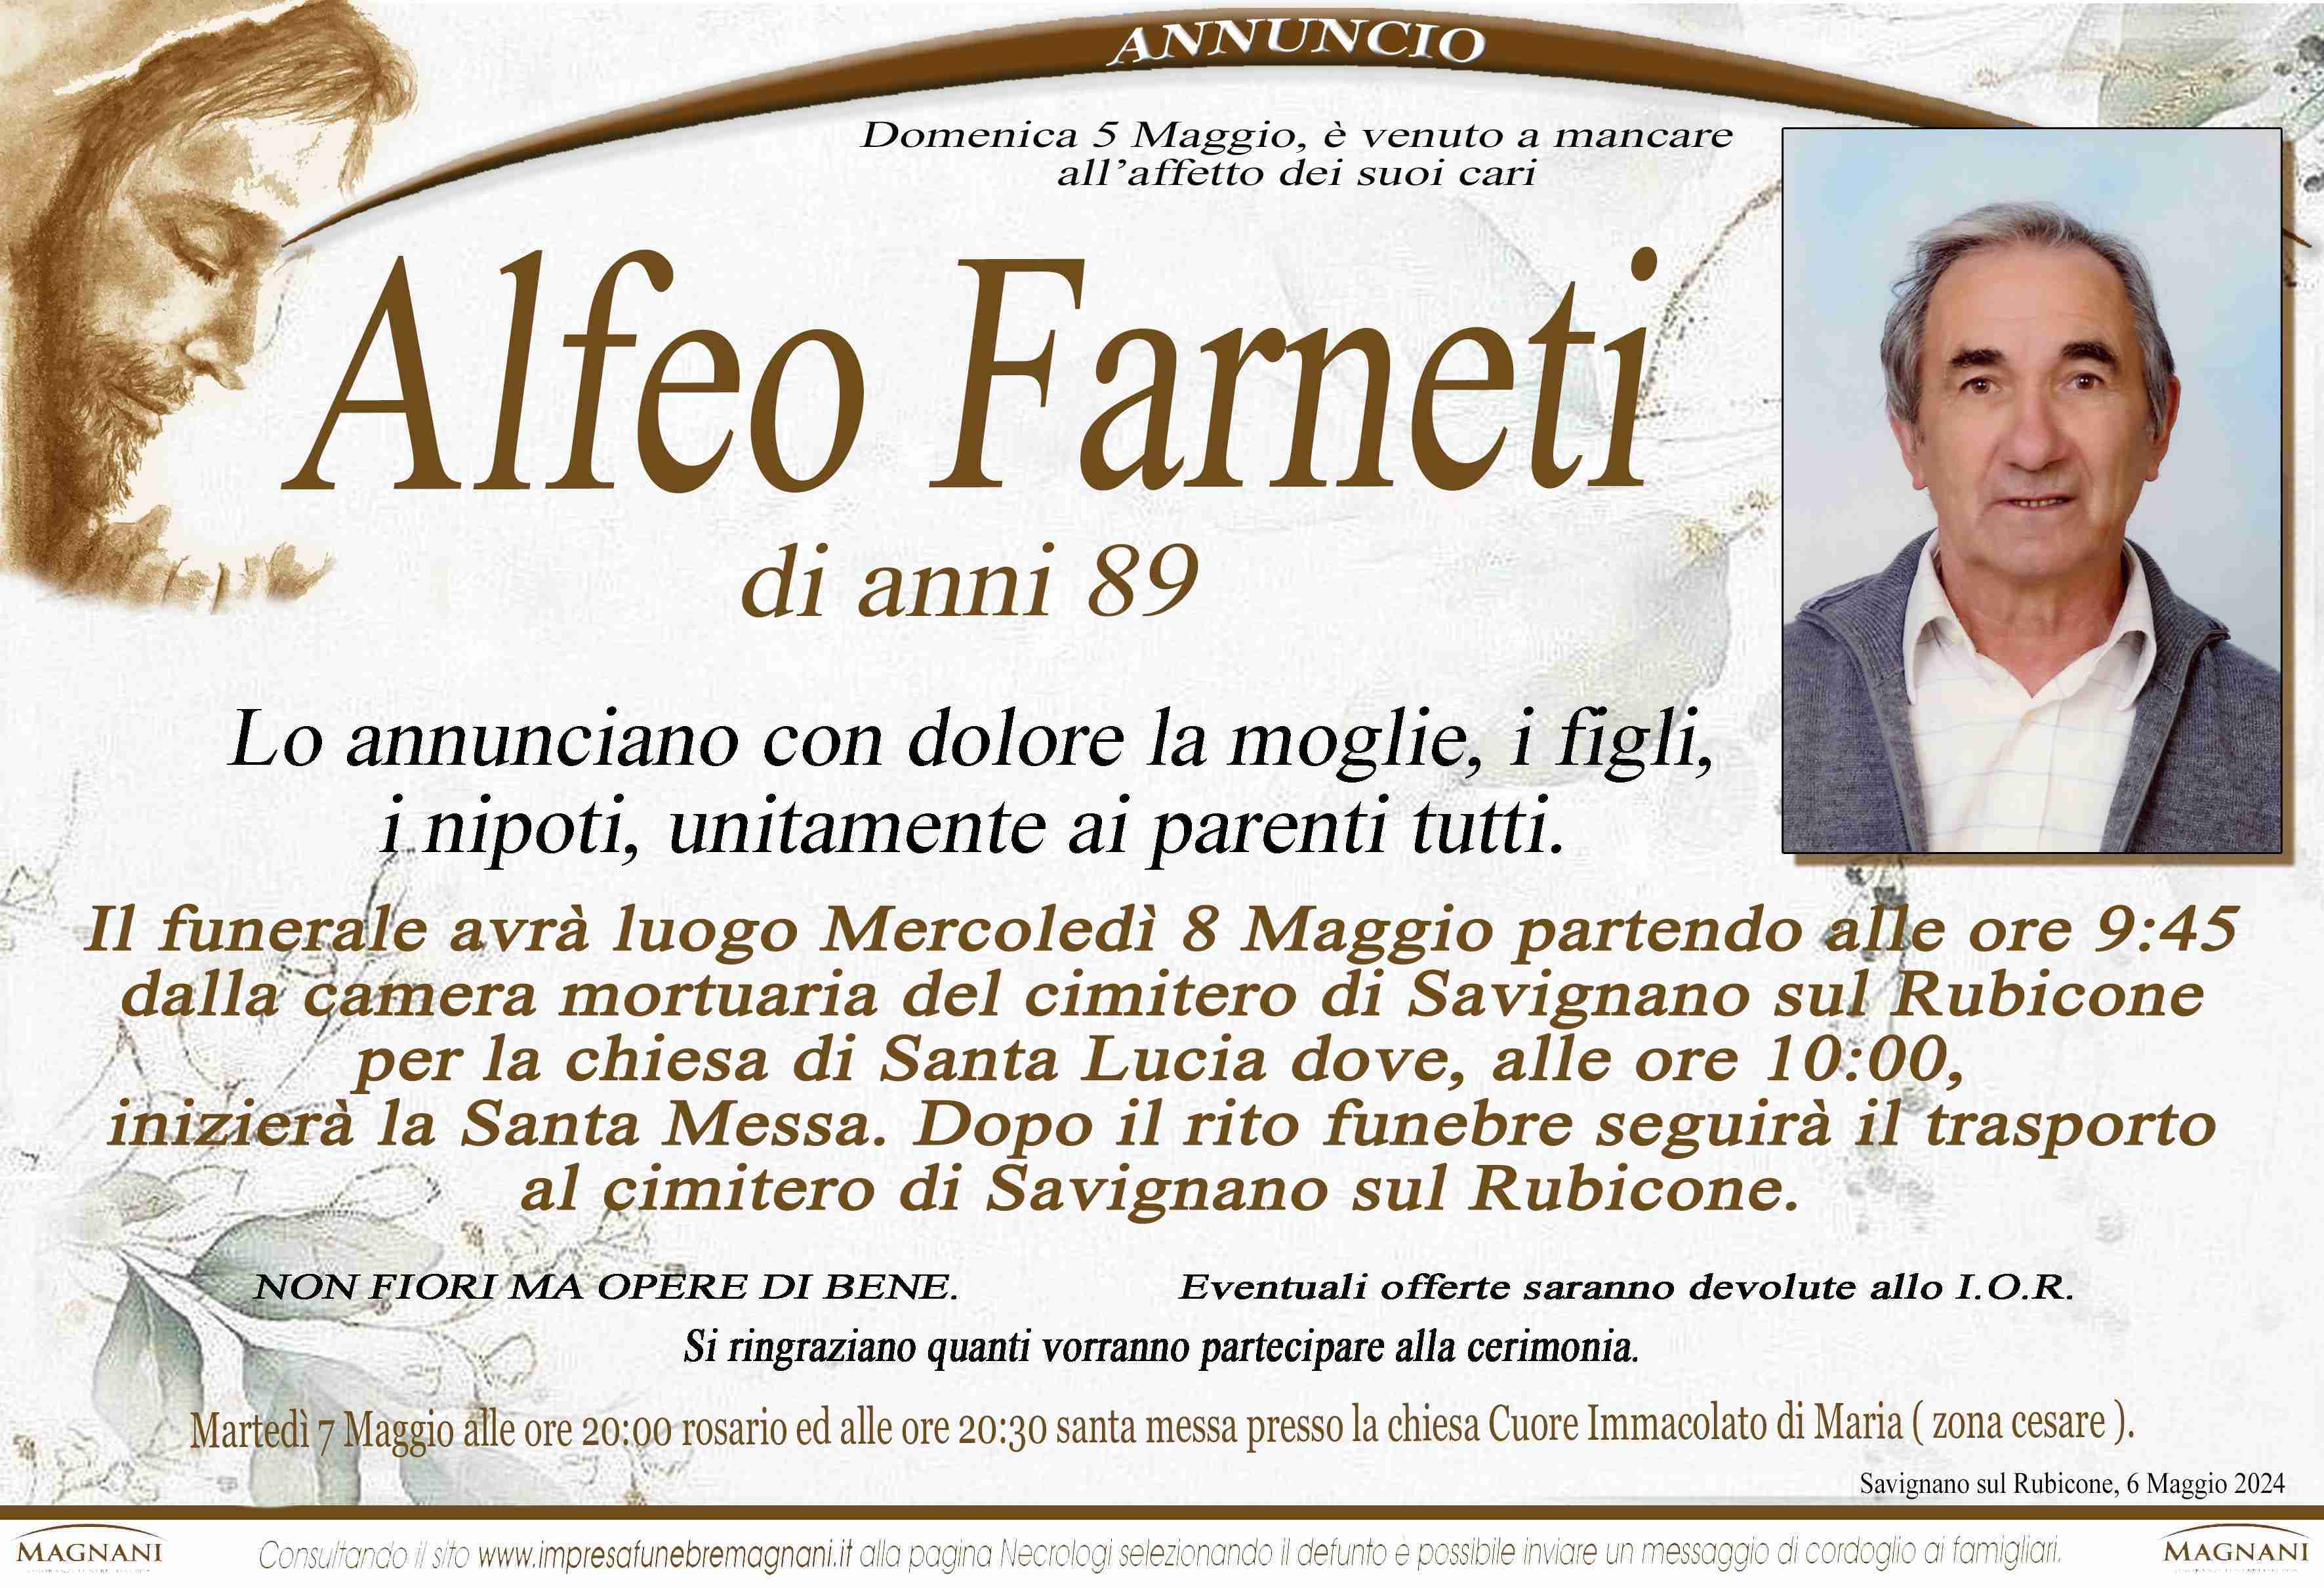 Alfeo Farneti